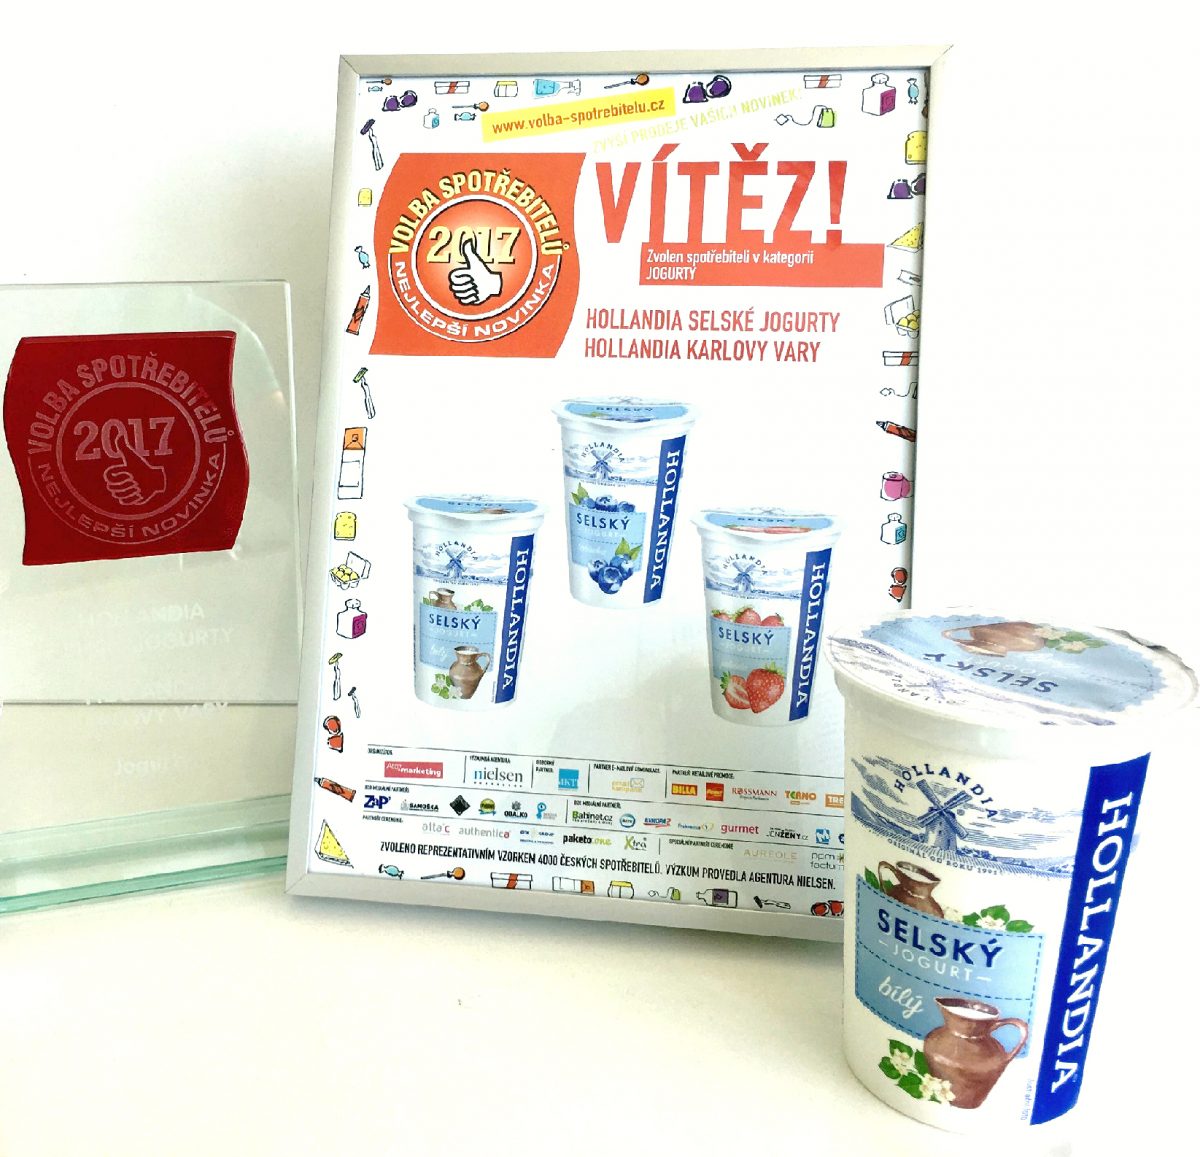 Hollandia Selský jogurt vyhrál Volbu spotřebitele 2017!